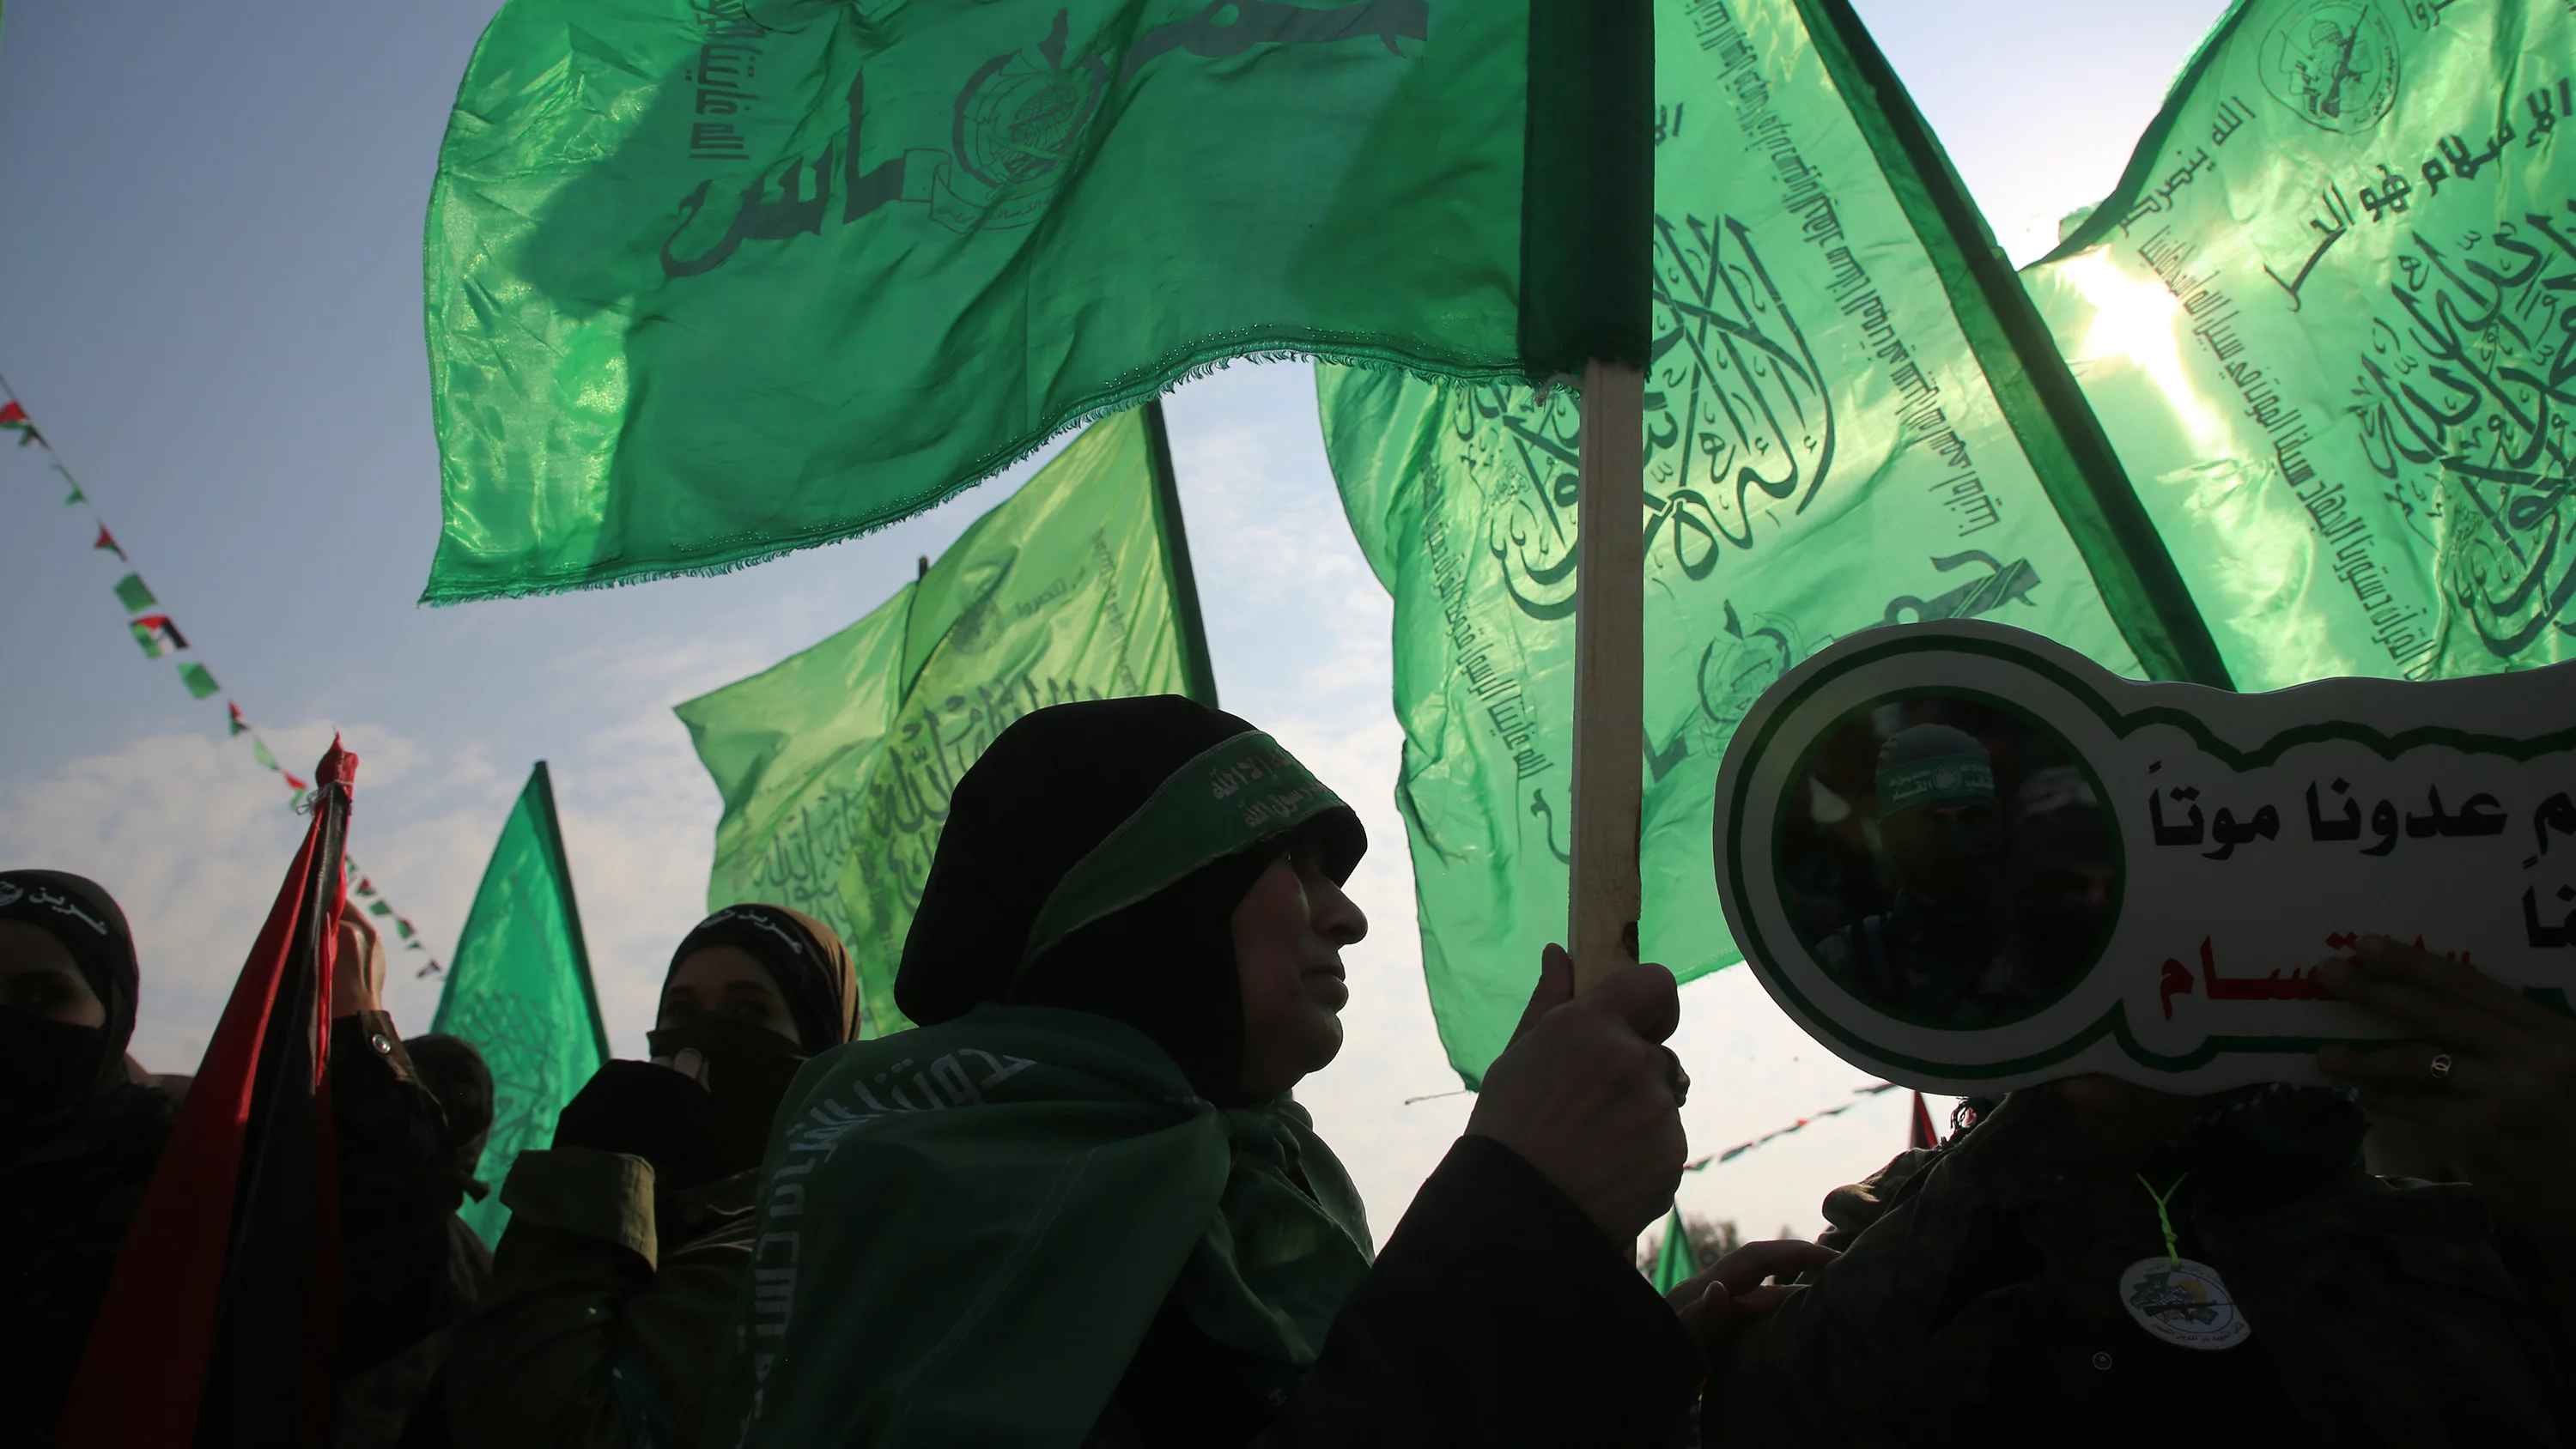 Wall Street Journal: como Israel ajudou a gerar o grupo Hamas